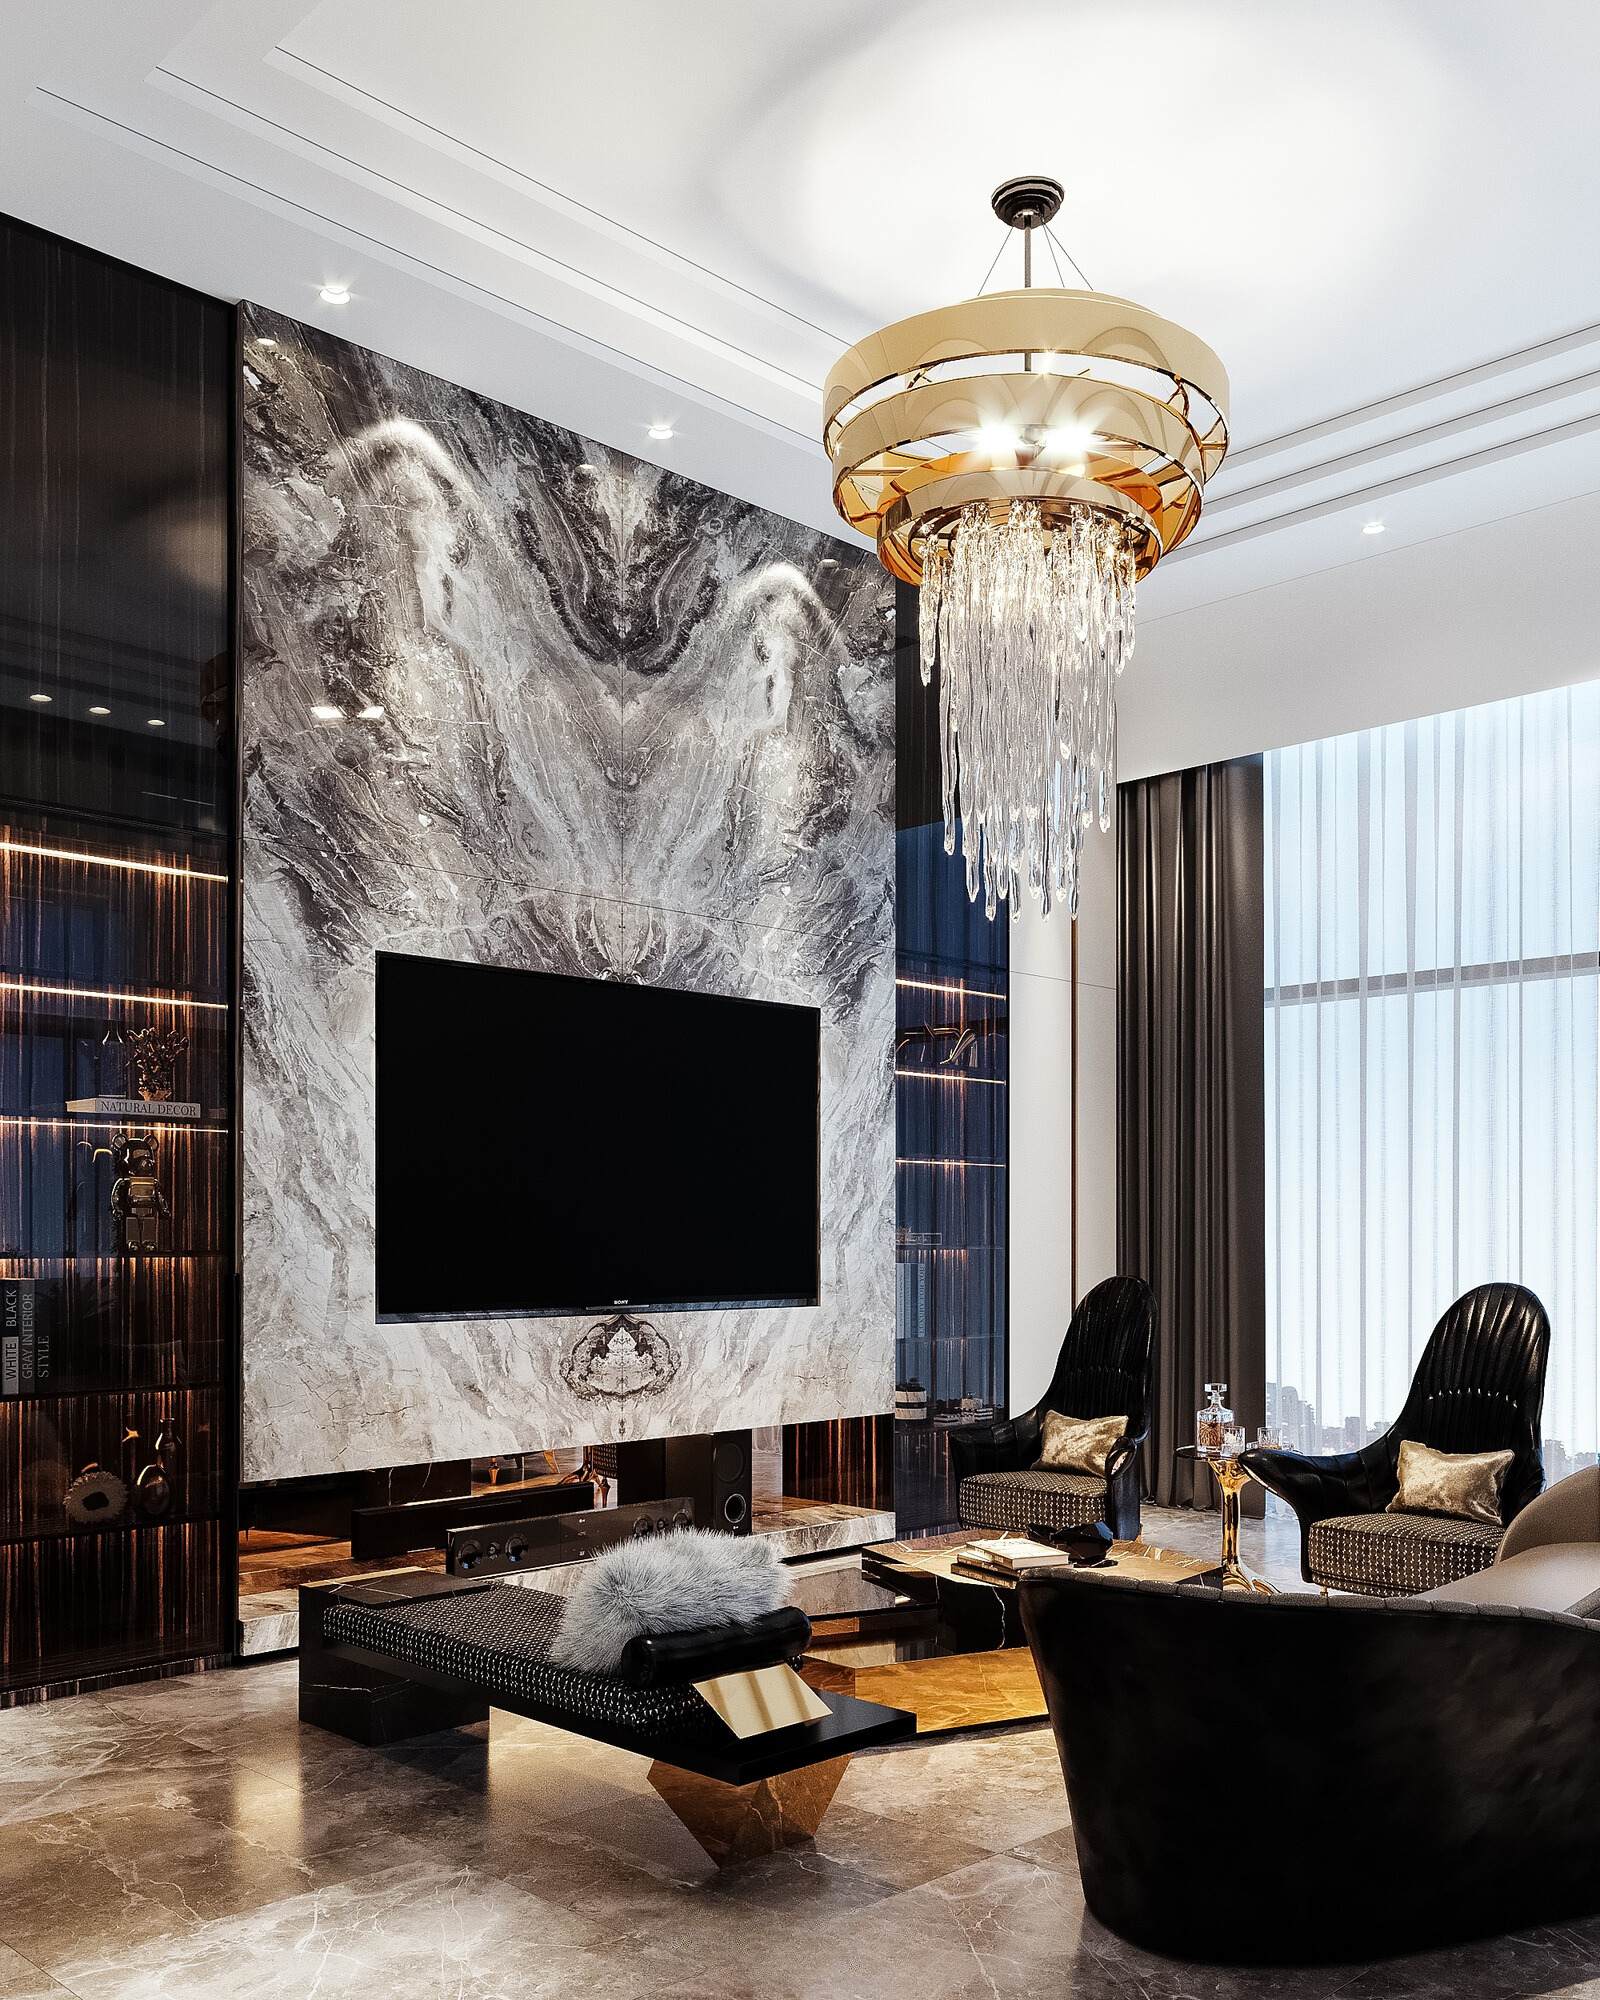 Thiết kế nội thất Luxury cho phép sử dụng màu sắc linh hoạt